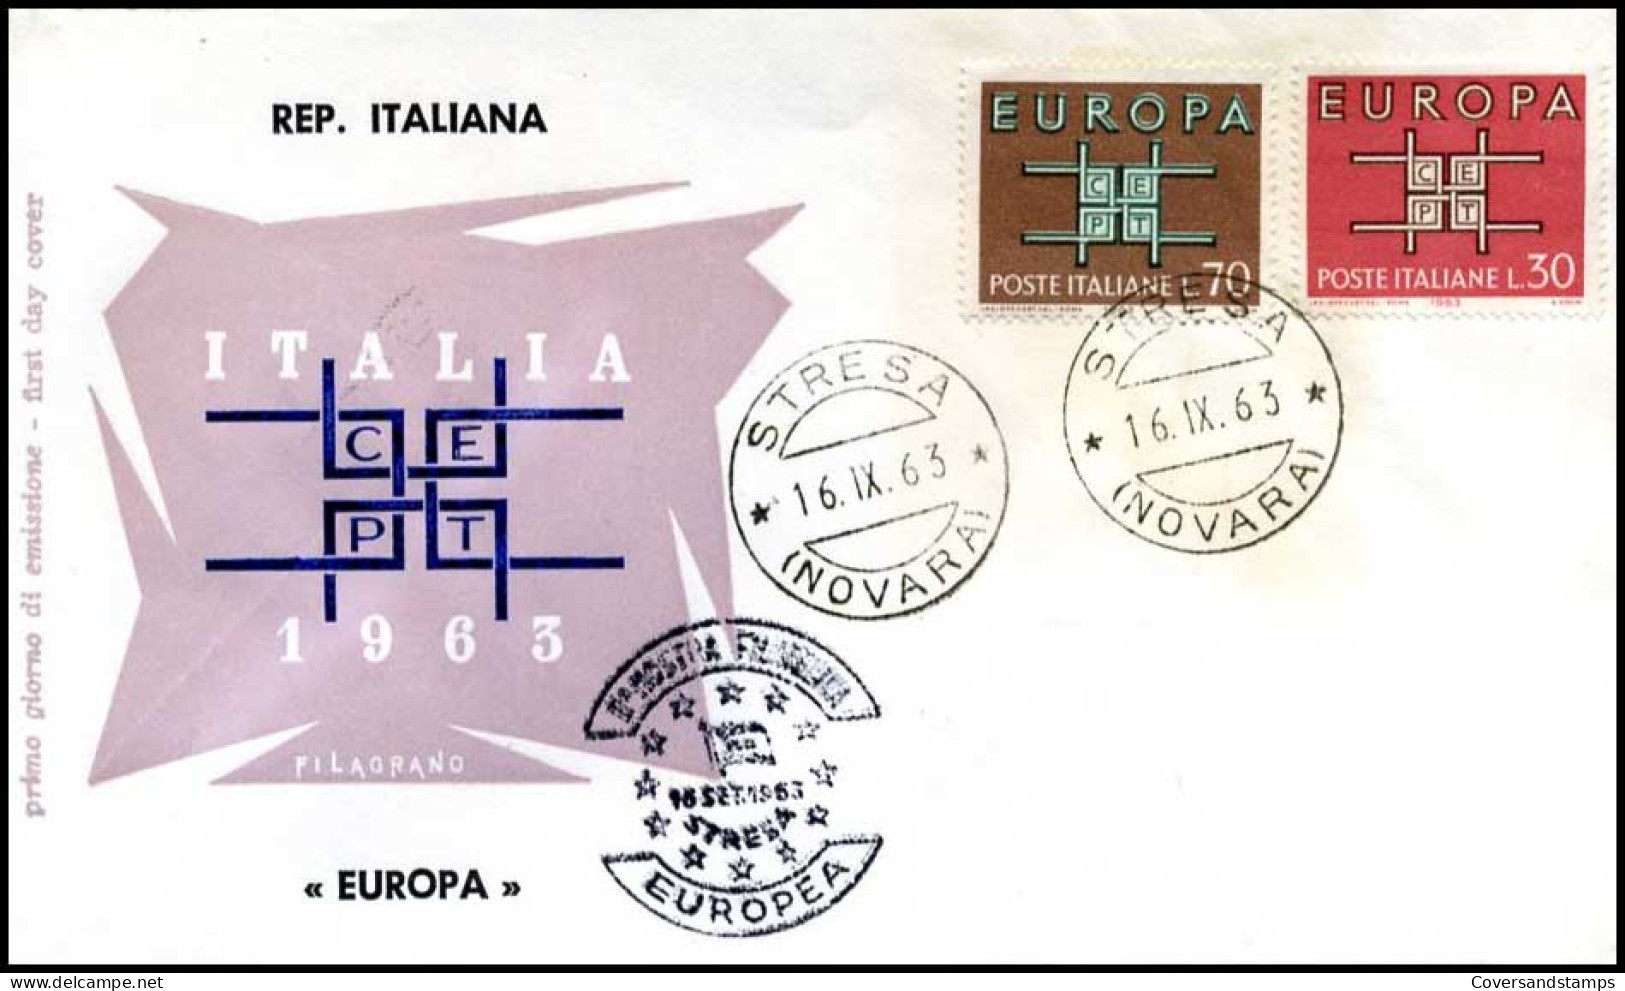  Italië  - FDC - Europa CEPT 1963 - 1963